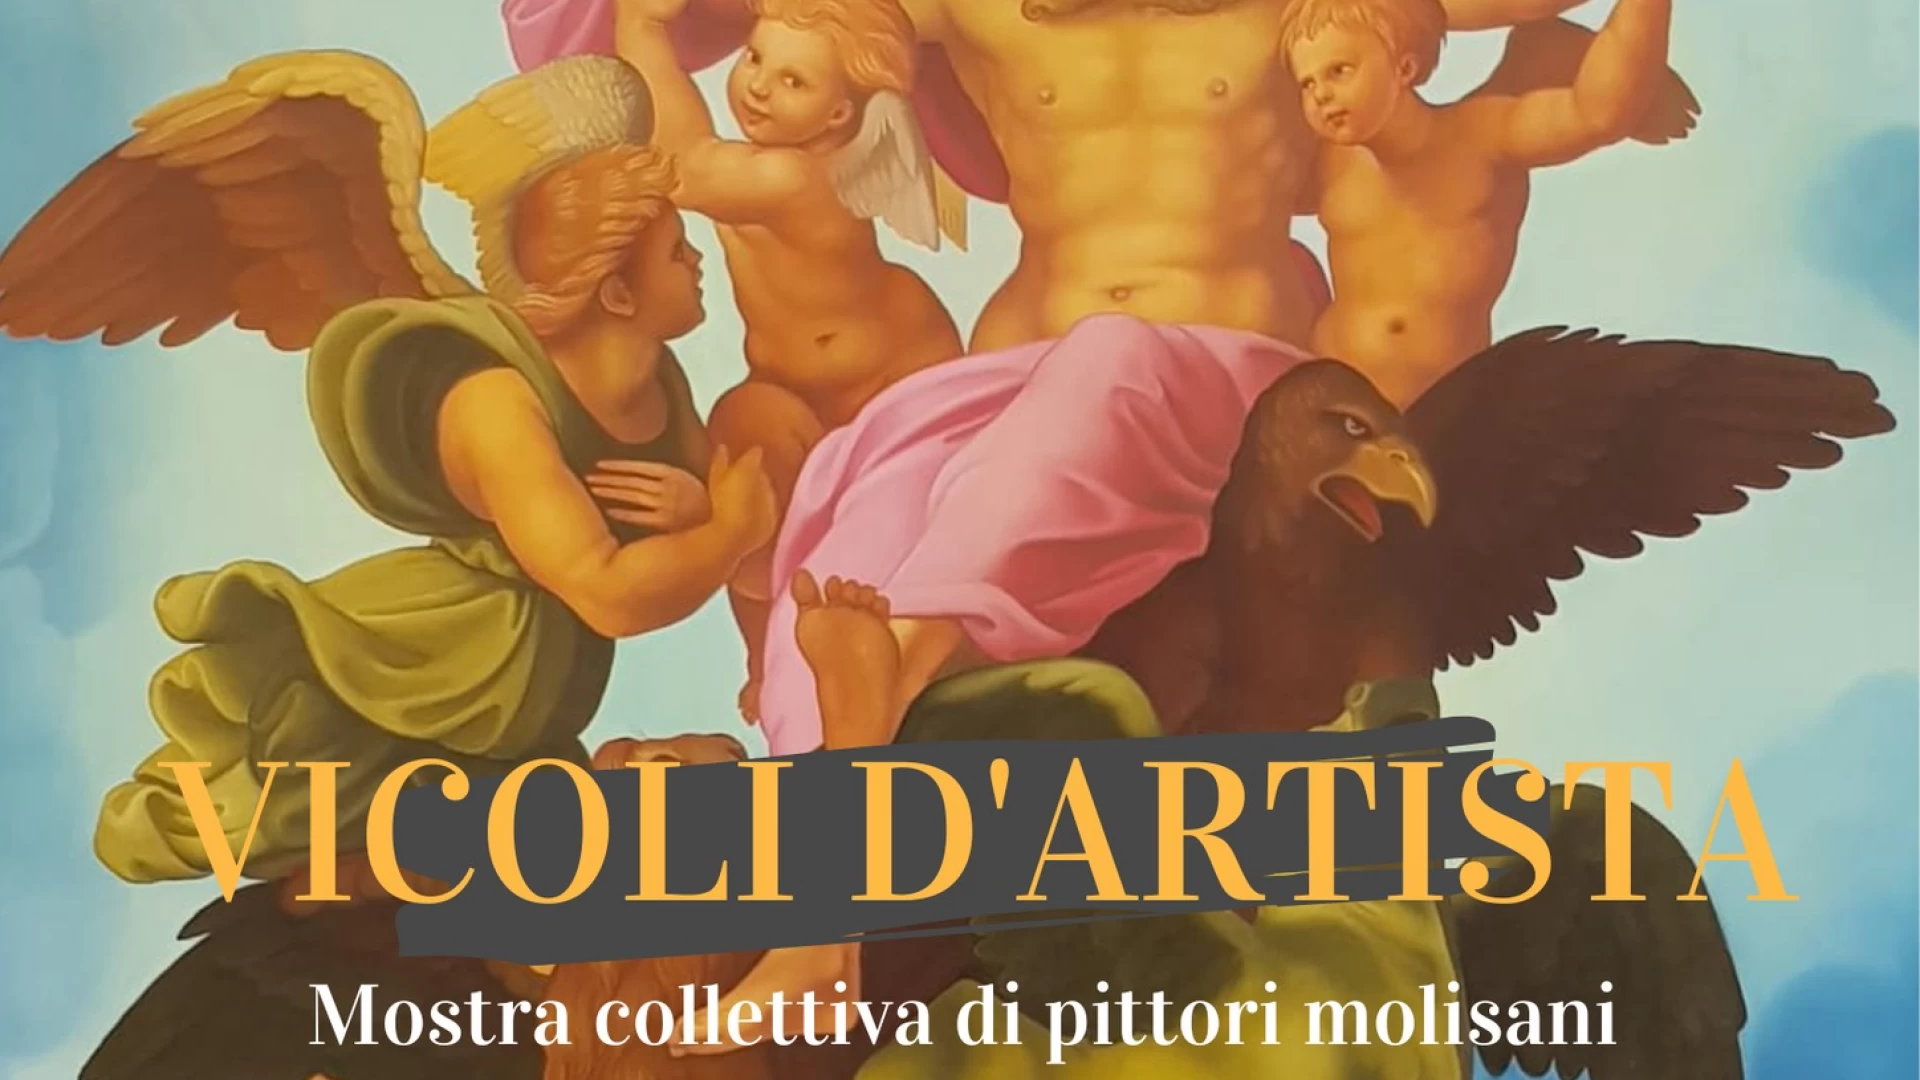 “Vicoli d’artista”, al piccolo museo Occhi a Candela di Frosolone. Aperta una collettiva di pittori molisani fino al prossimo 16 agosto.